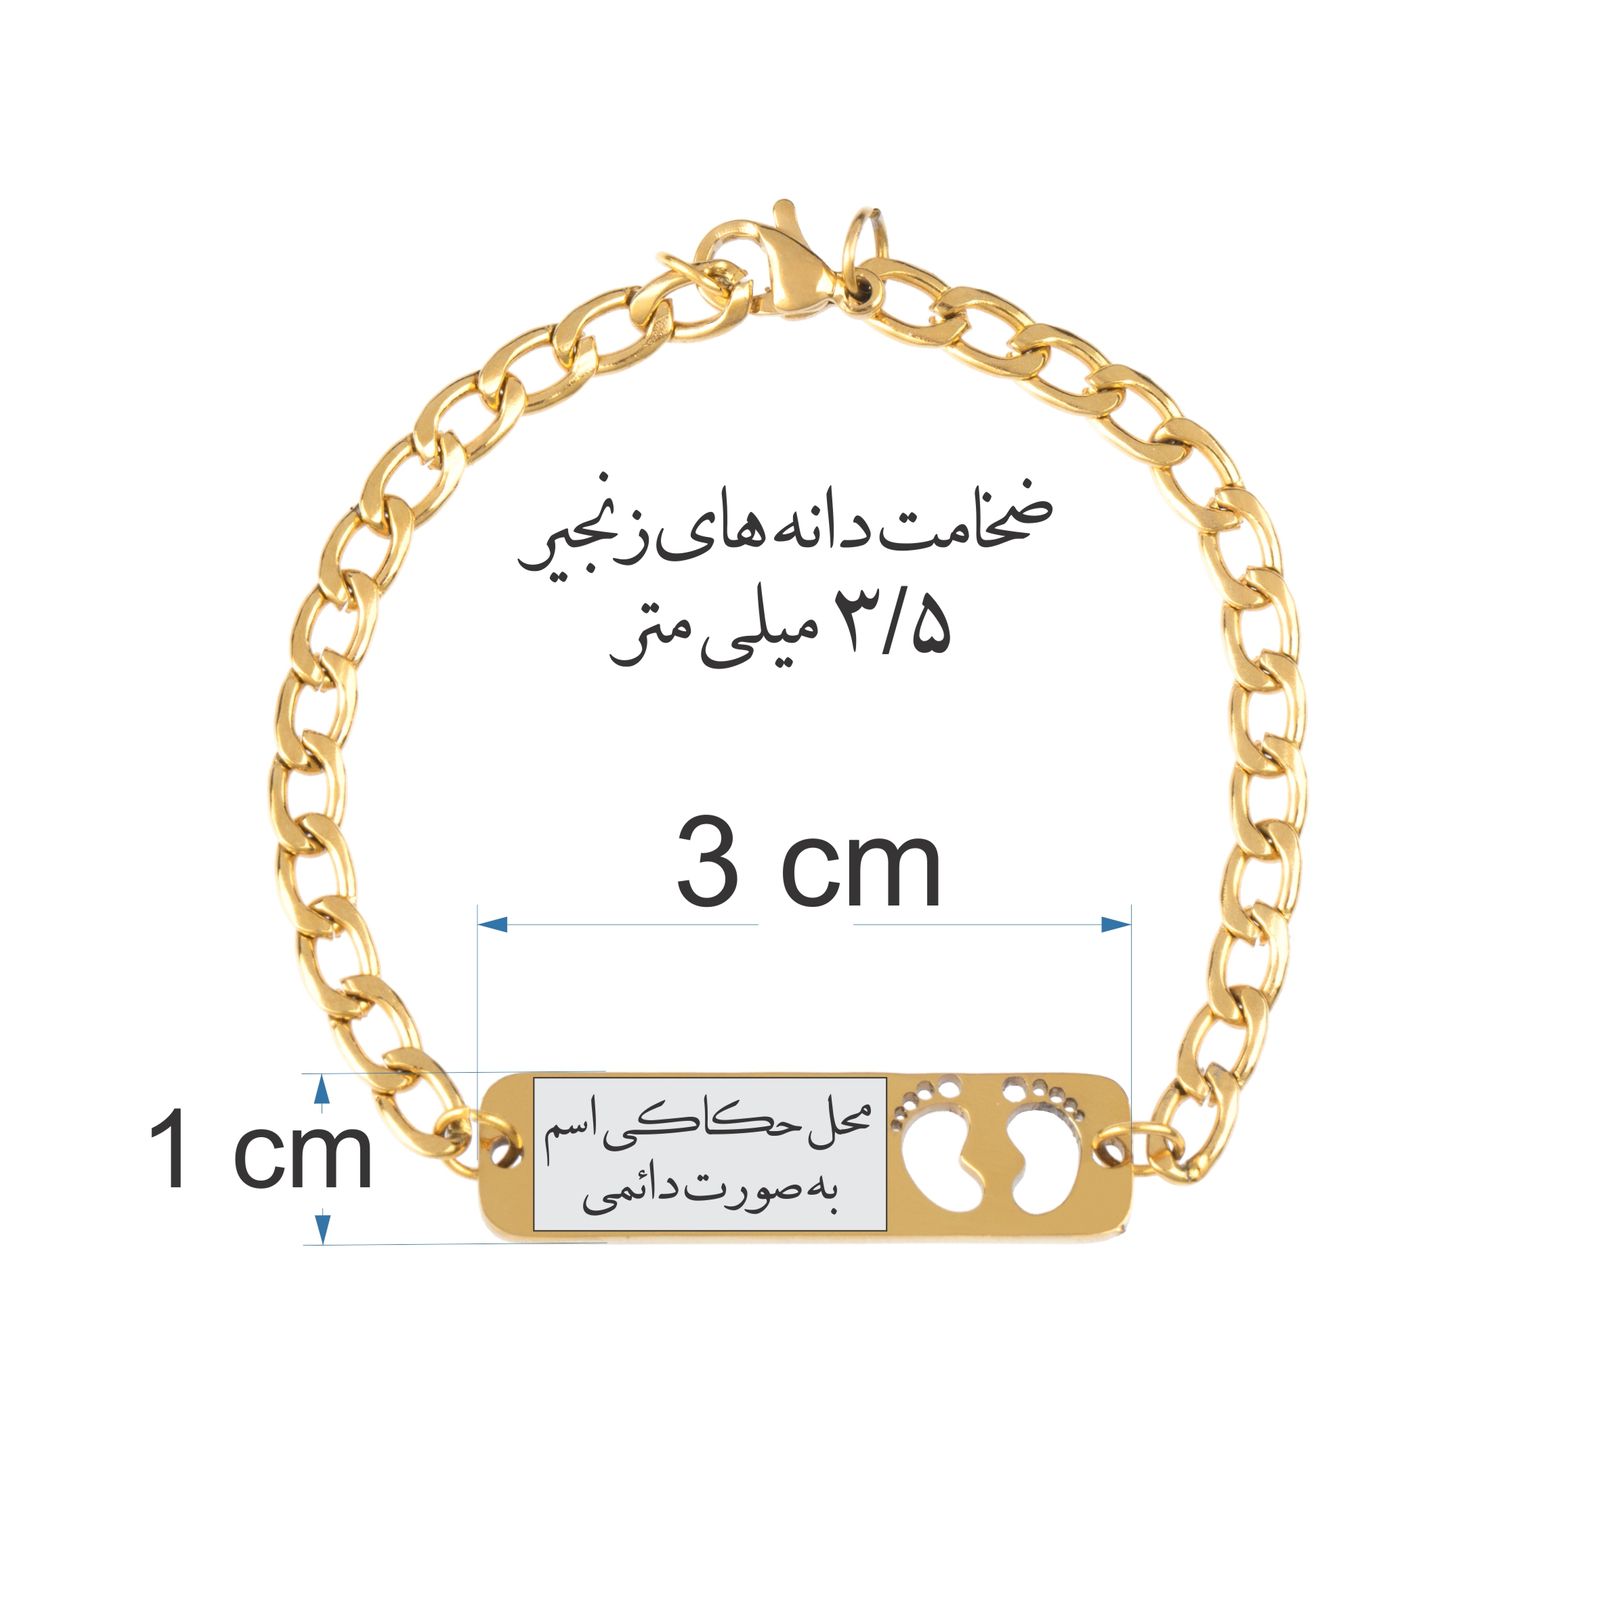 دستبند دخترانه گيلواره زراوشان مدل اسم حلما کد B293 -  - 3